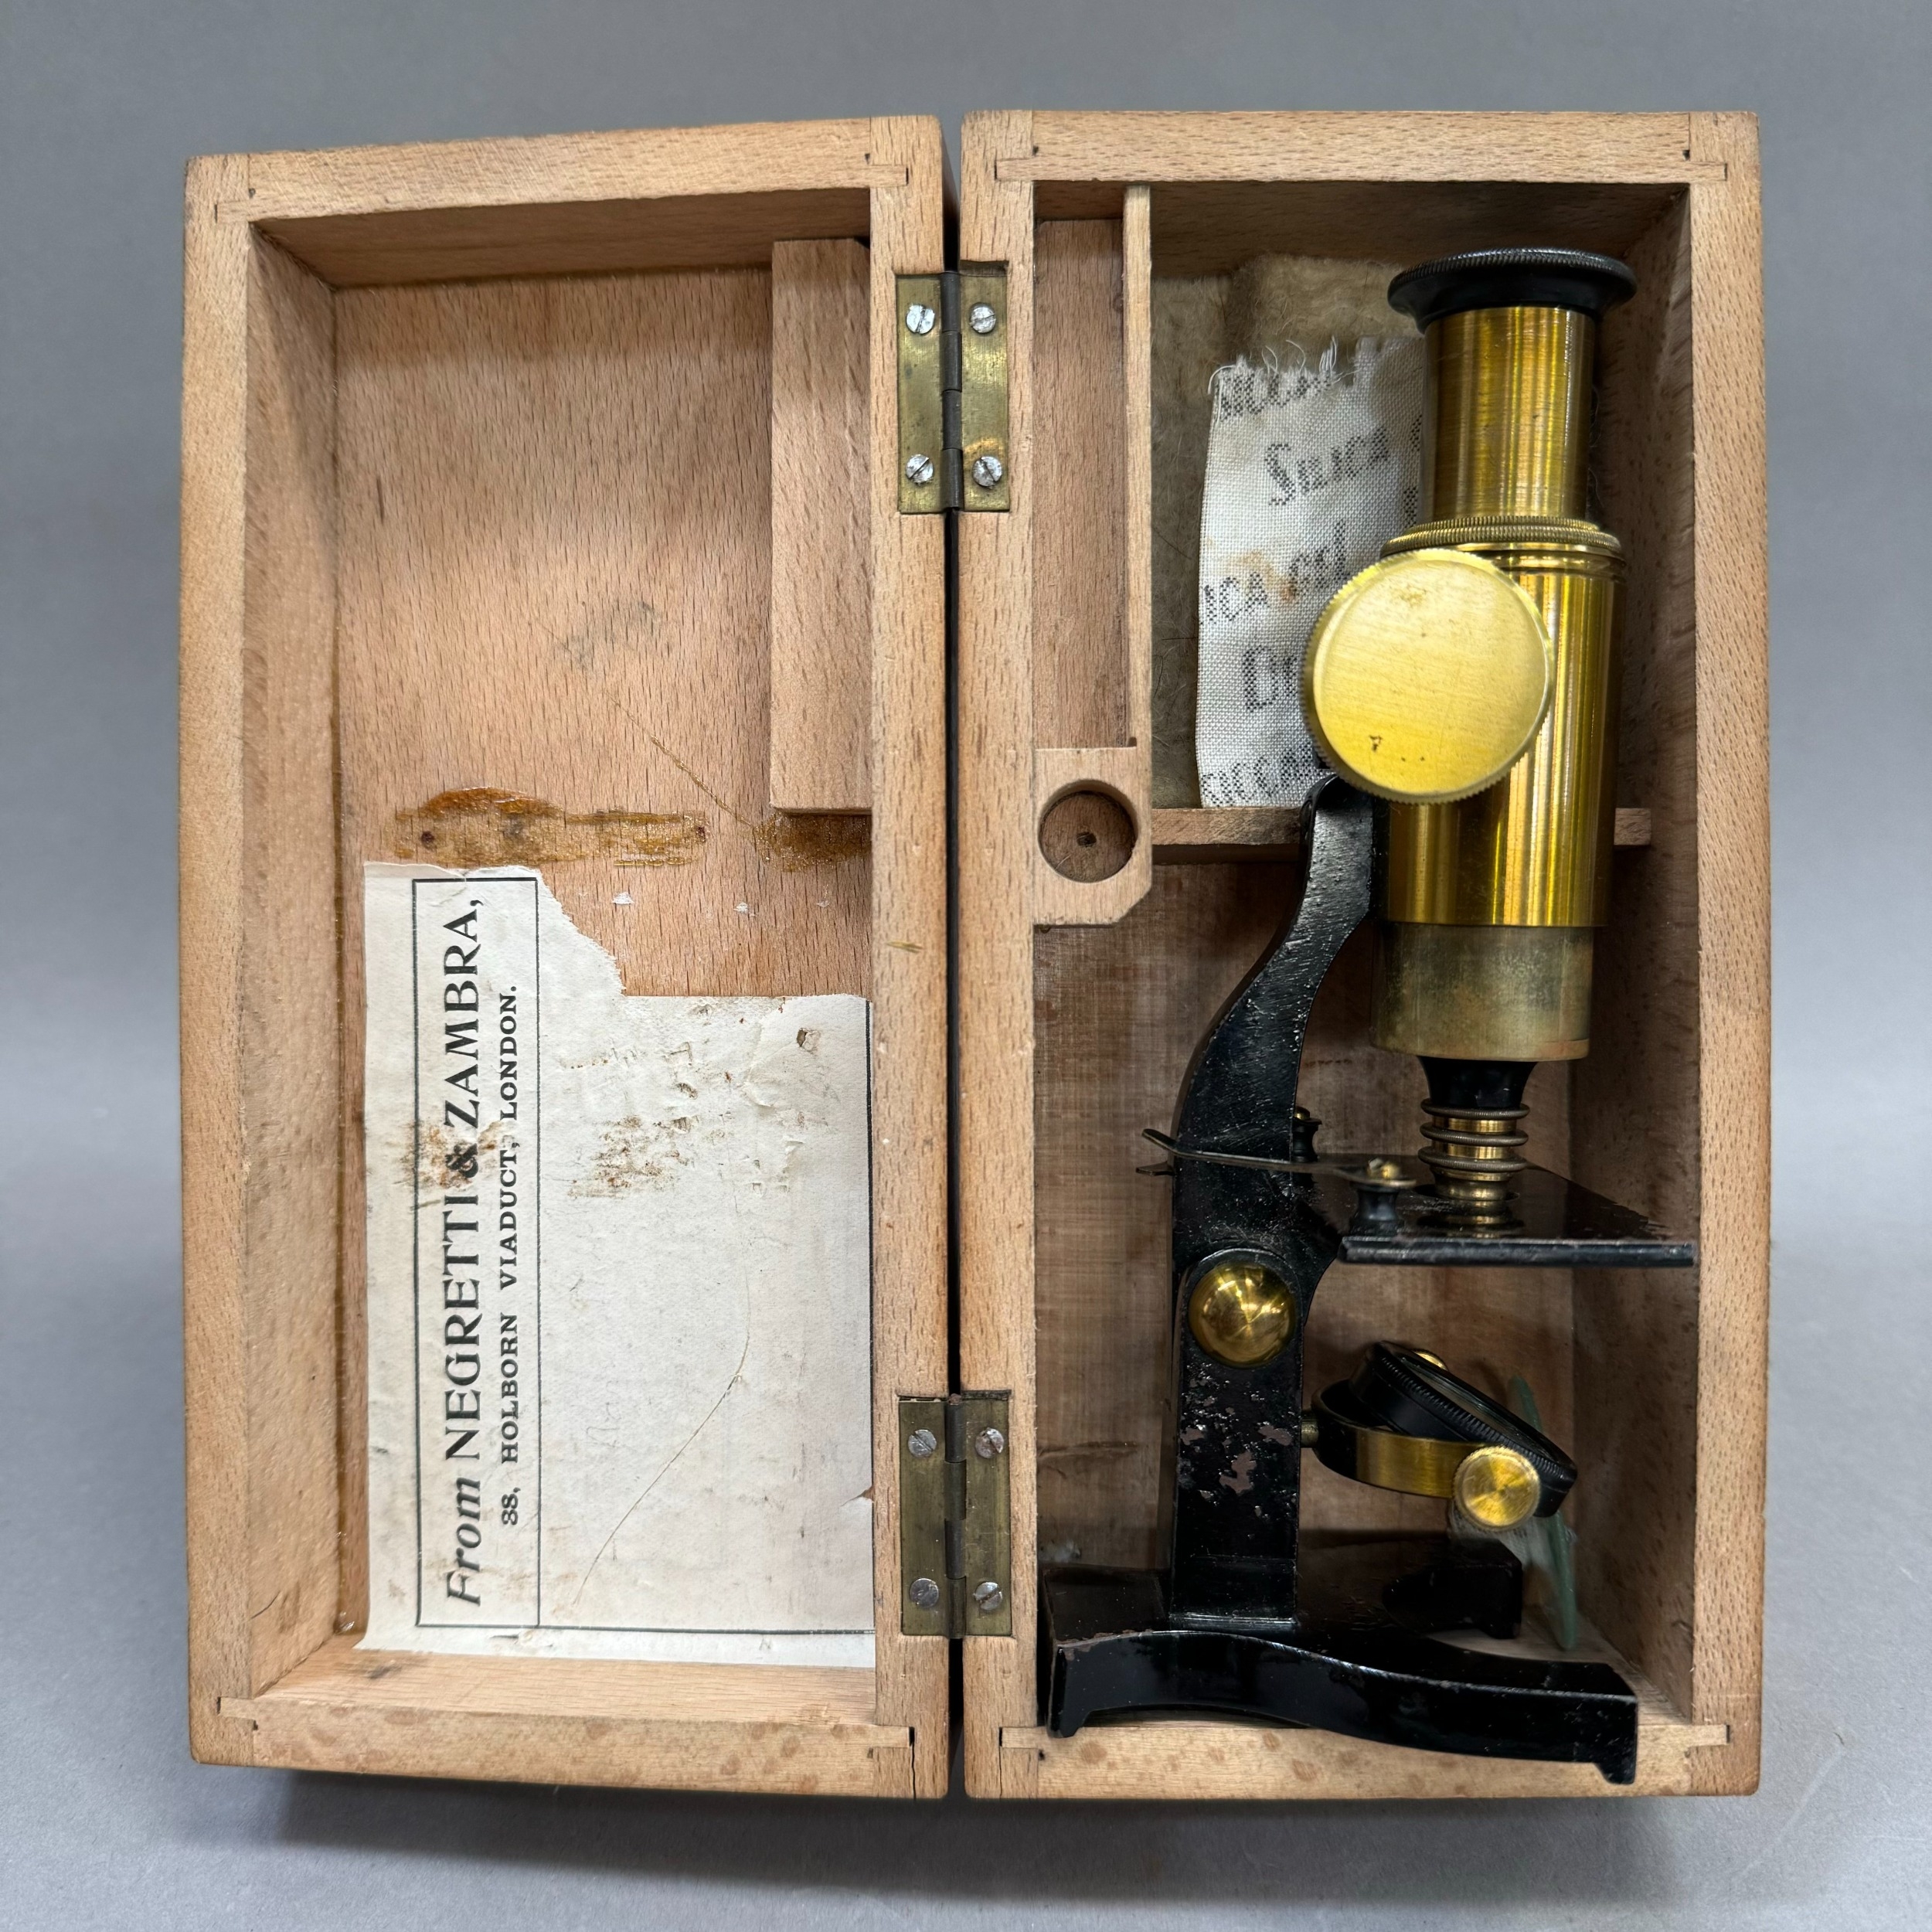 A Negretti and Zambra microscope in wooden case - Image 3 of 3